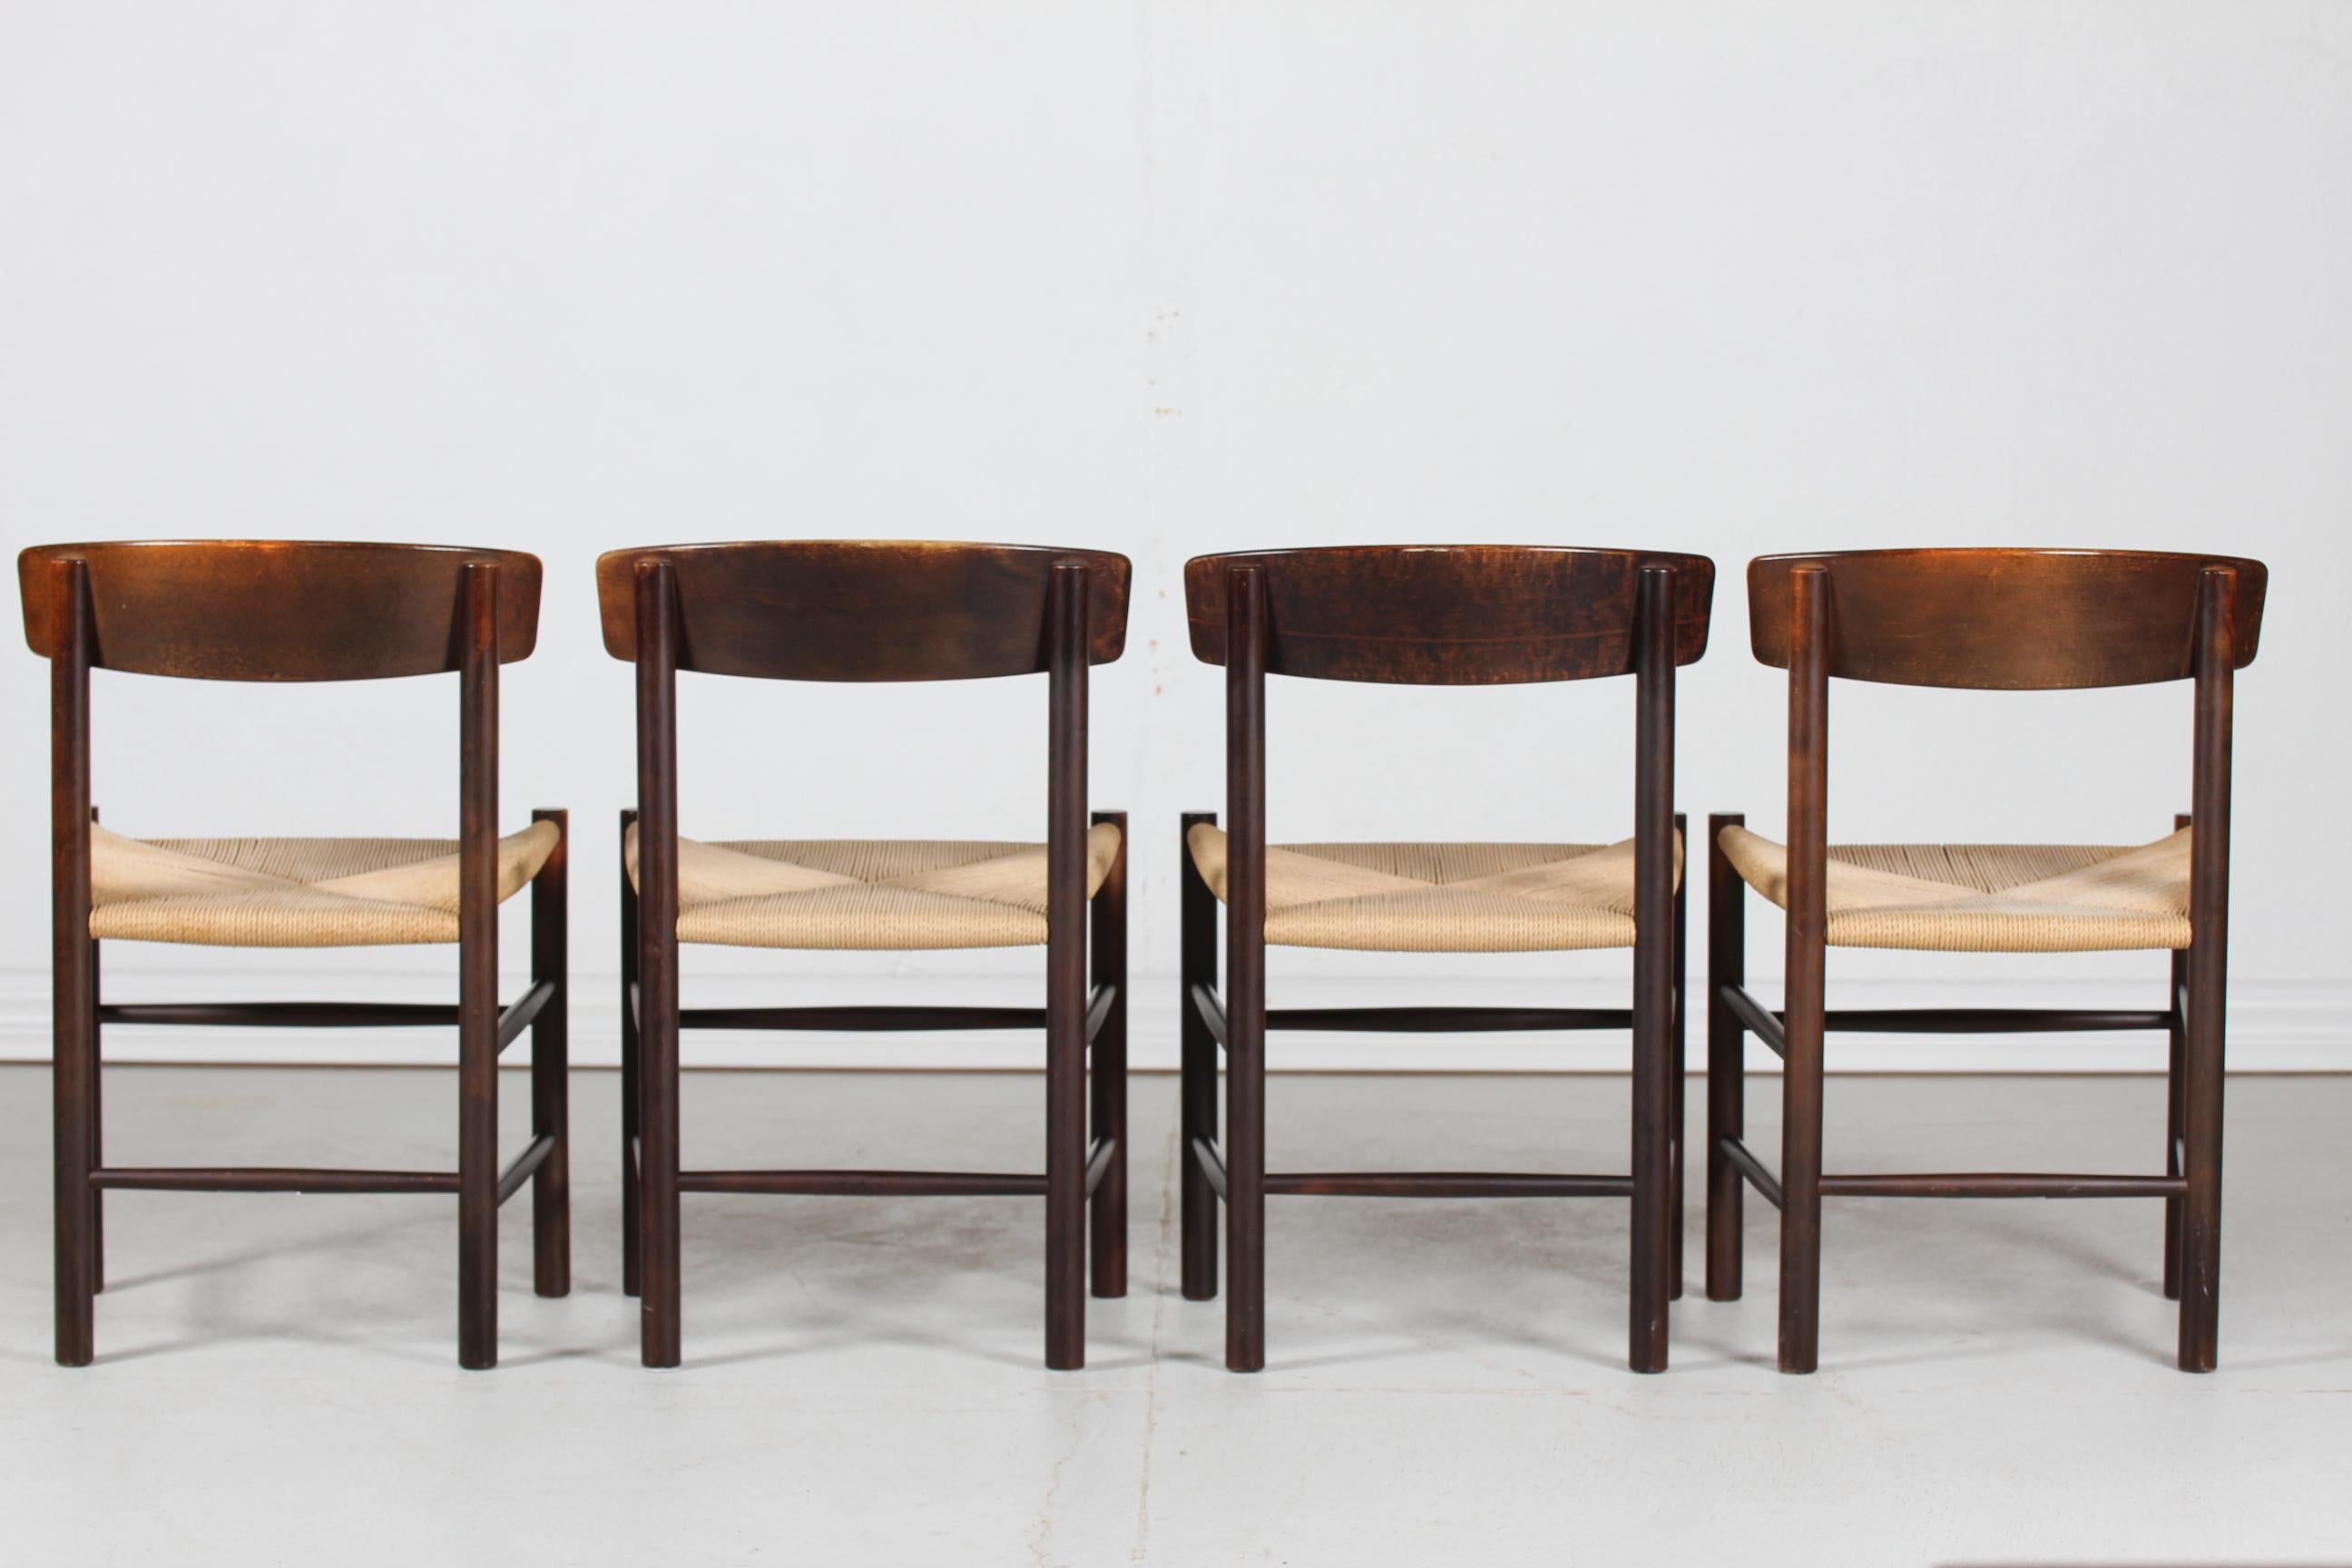 Satz von vier Esszimmerstühlen Modell J 39 von dem dänischen Möbeldesigner Børge Mogensen (1914-1972) 
Der Designklassiker 